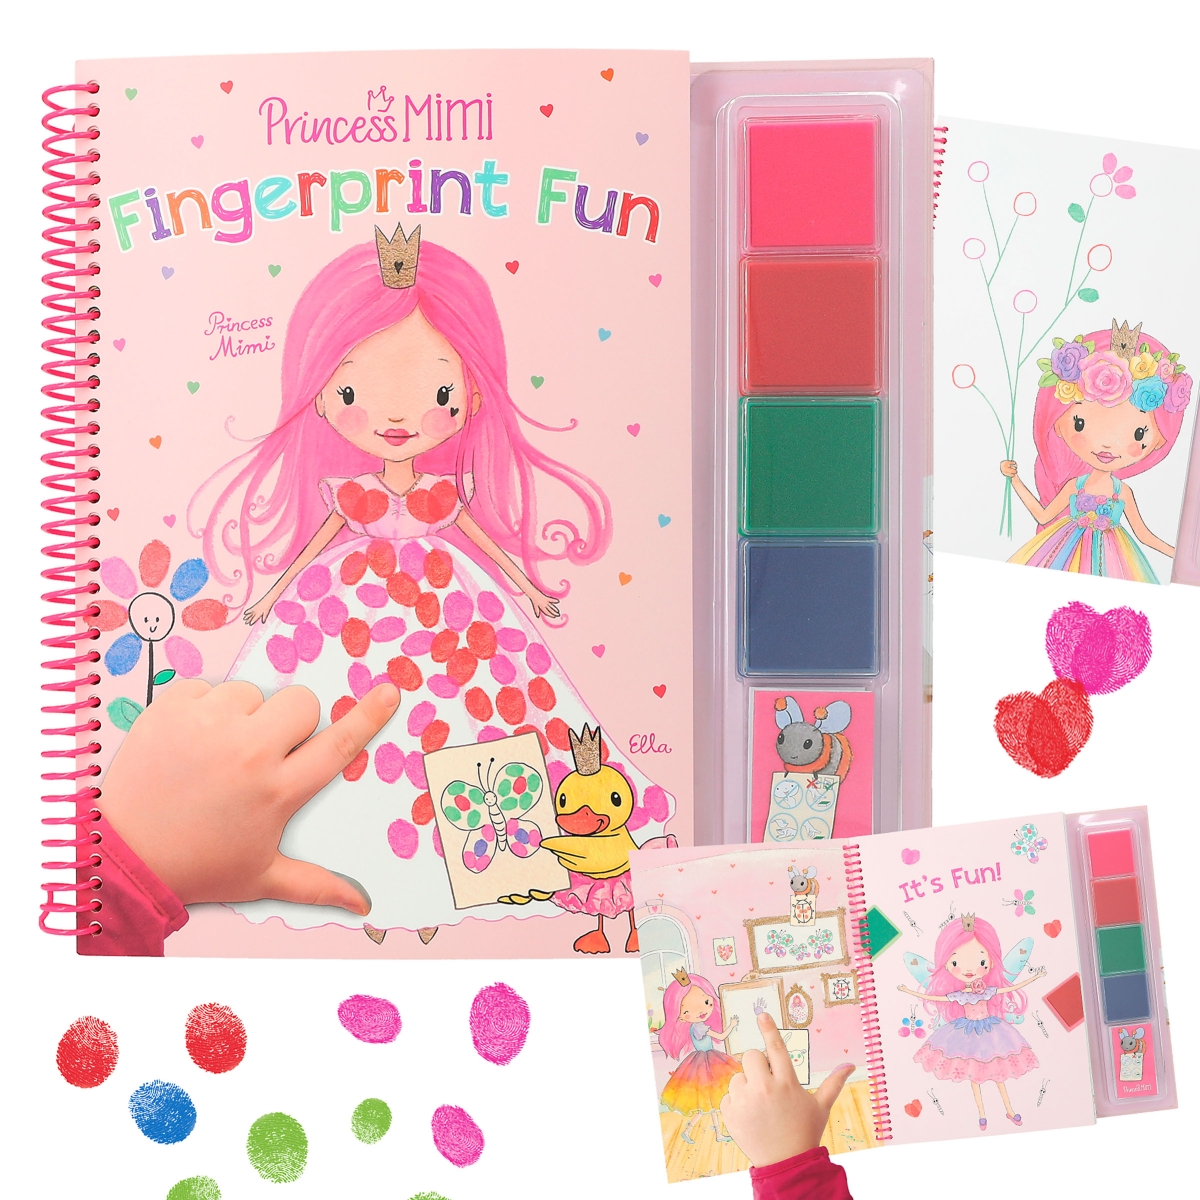 PRINCESS THUMBPRINT Art, Princess DIY, Princess Worksheets, Princess Party  Craft, Princess Digital Download Fingerprint Art Kit 